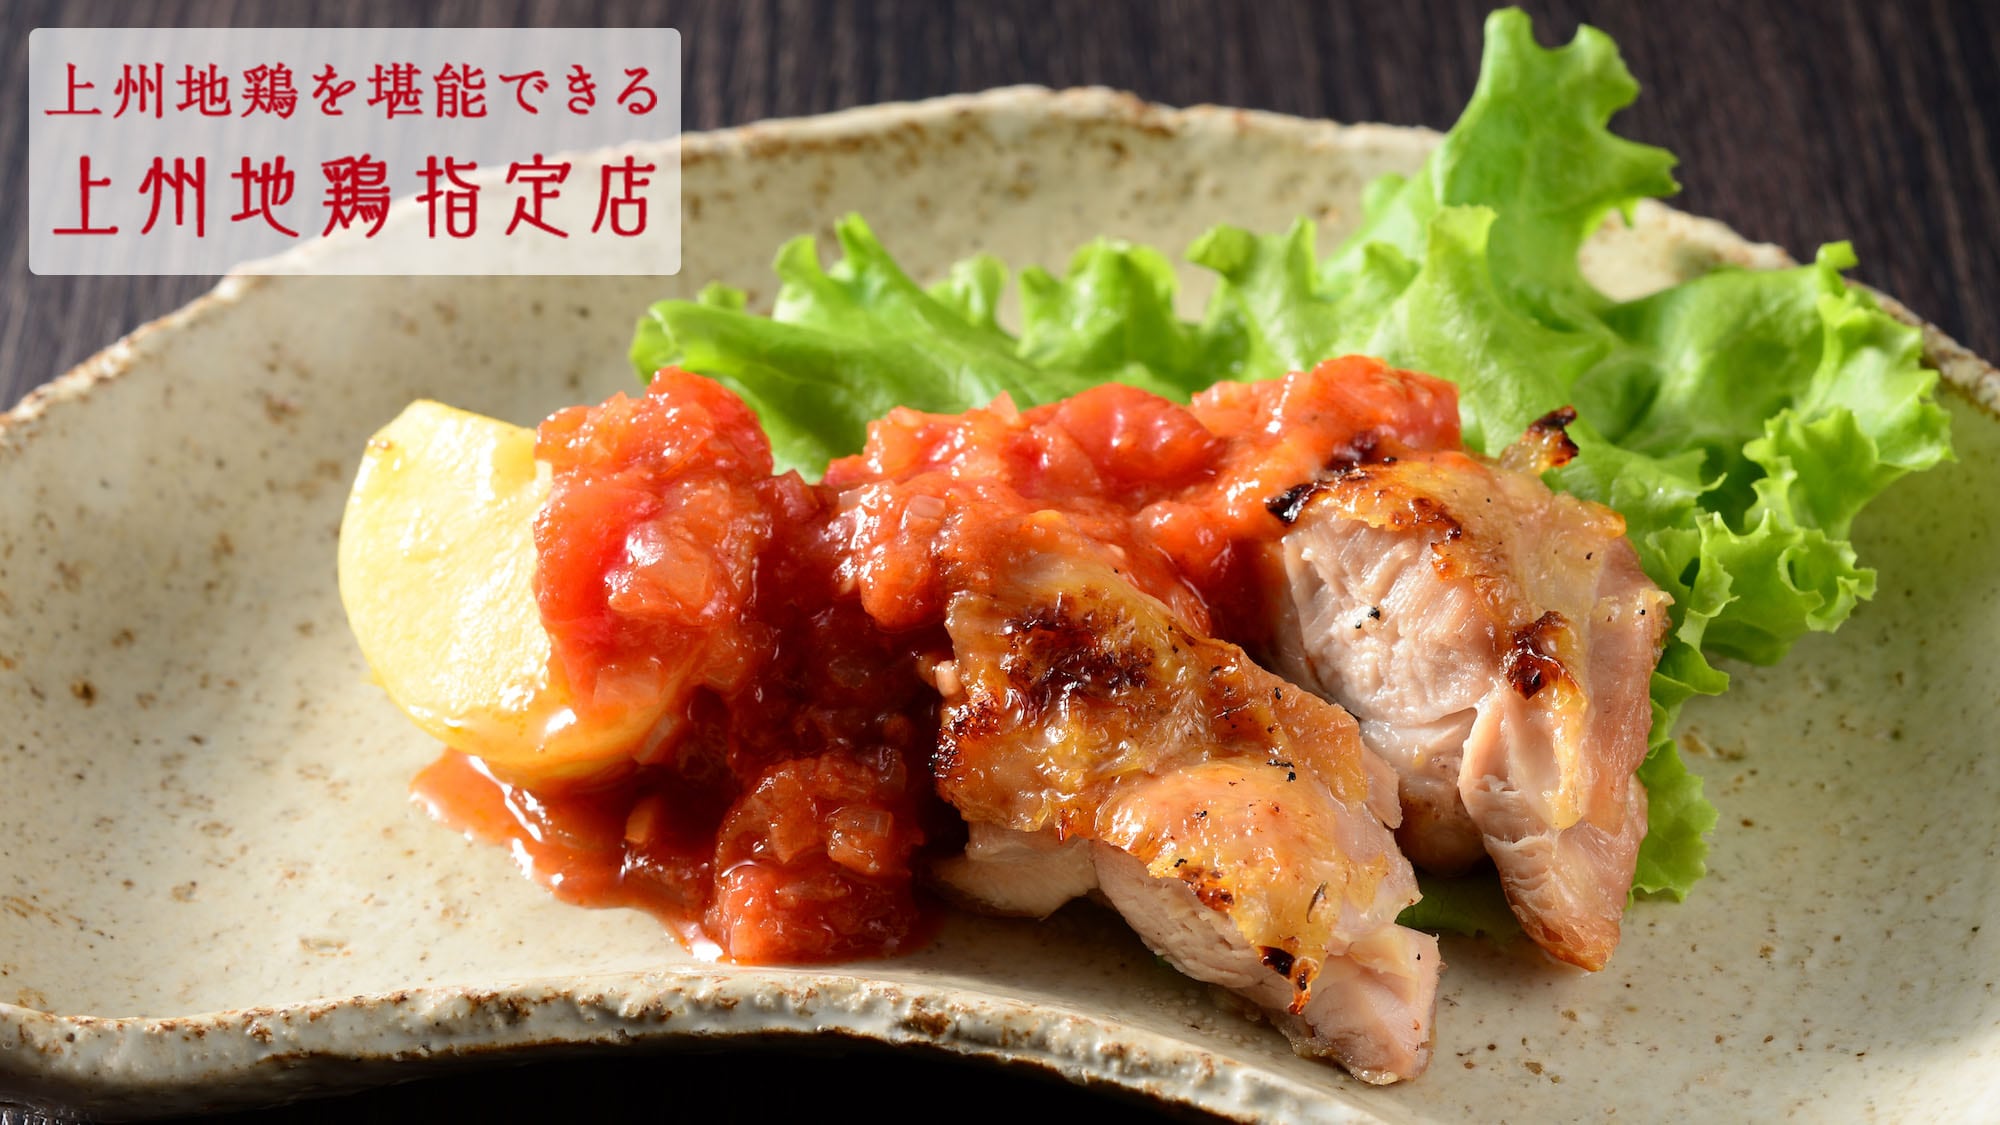 조슈 지닭 군마의 희귀한 고급 닭을, 감칠맛과 맛 깊은 토마토 소스에 얽힌 일품.